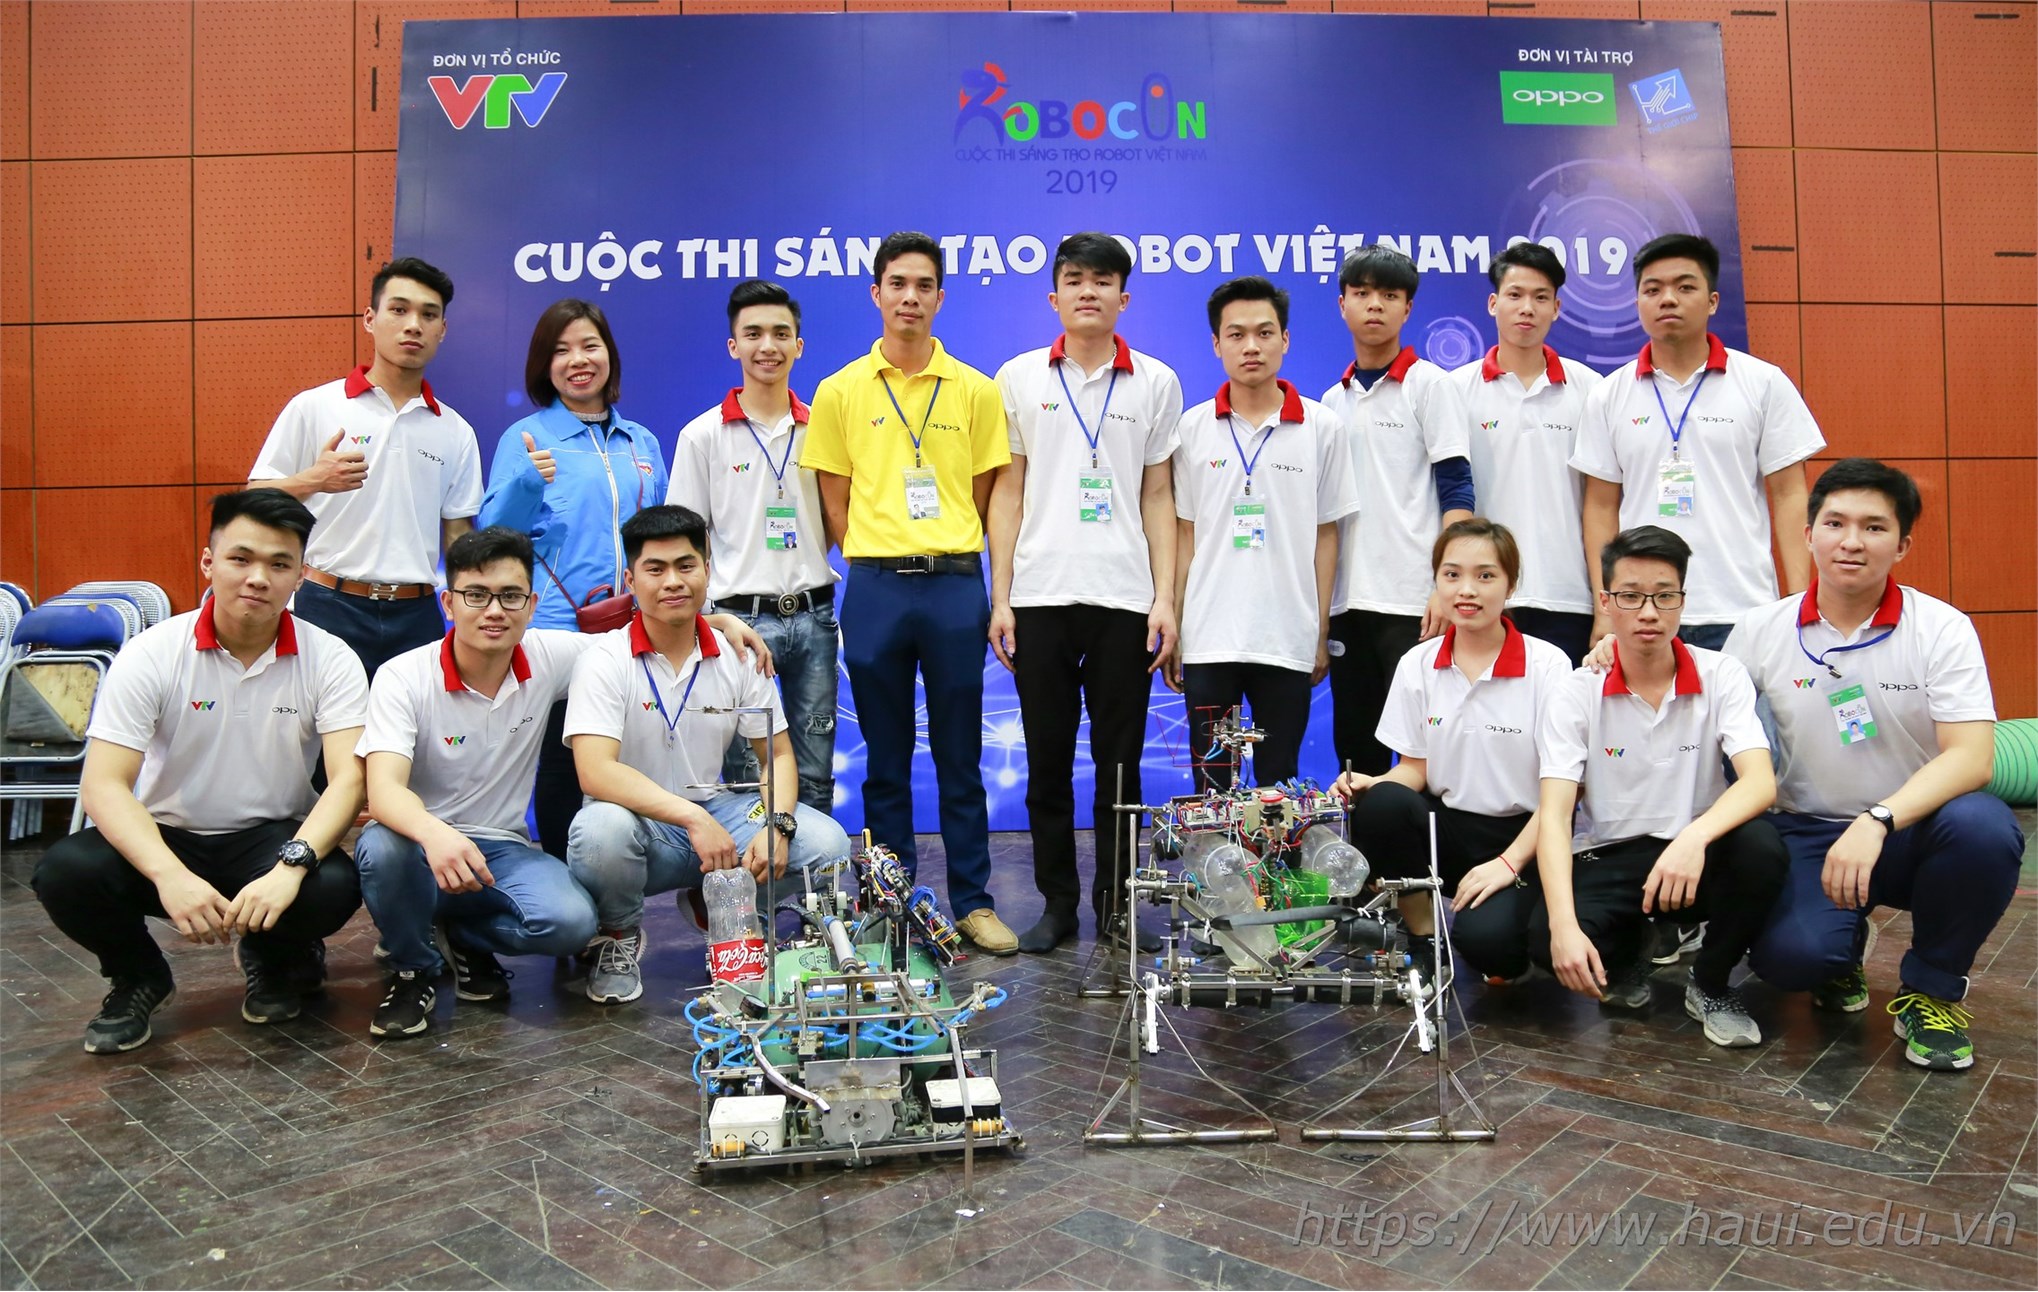 05 đội tuyển Robocon ĐHCNHN toàn thắng tại cuộc thi sáng tạo Robot Việt Nam năm 2019 - khu vực phía Bắc